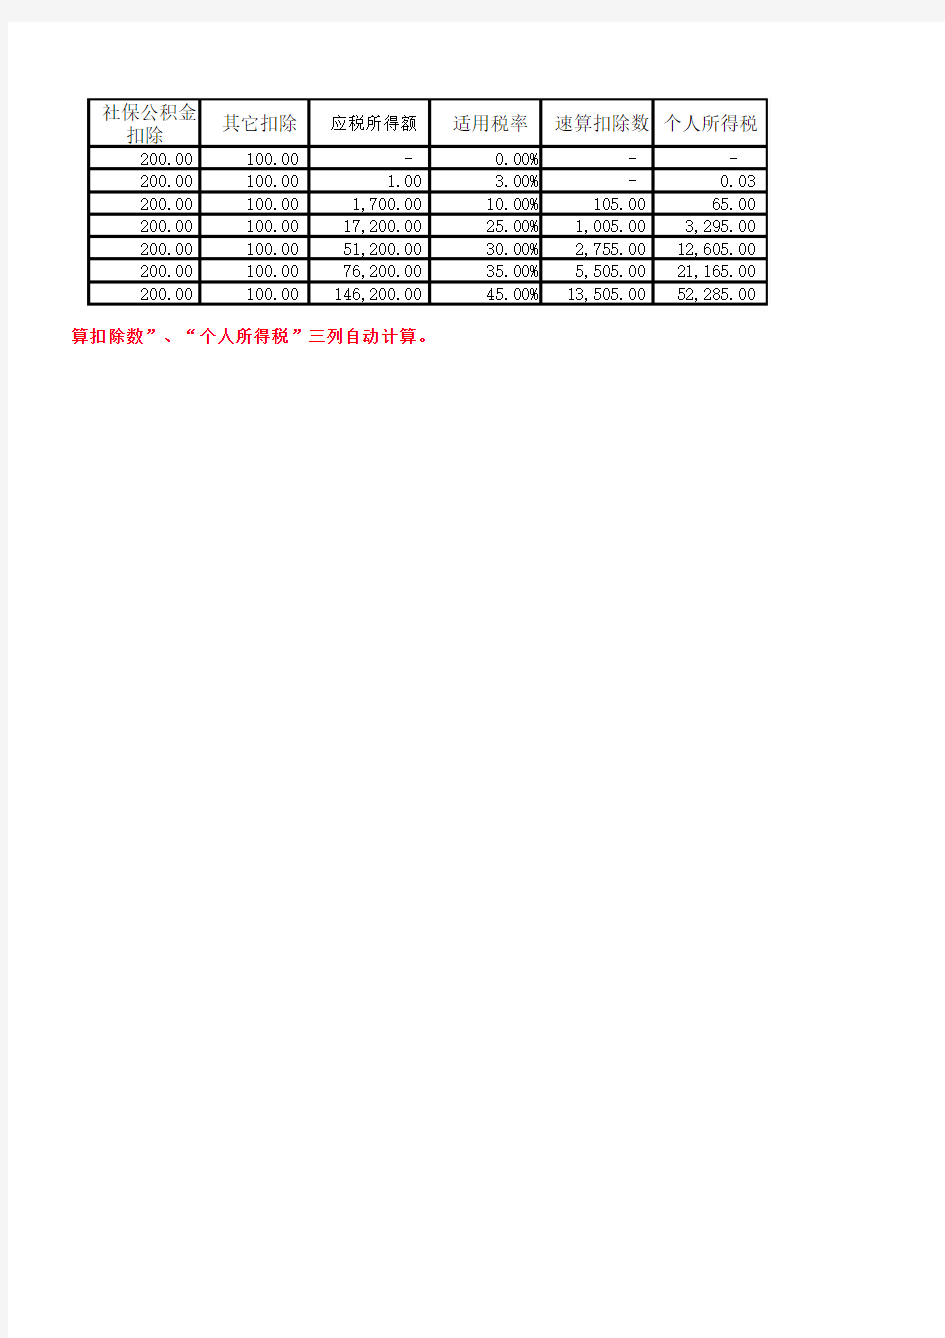 2013年新个税EXCEL计算公式(起征点3500元)